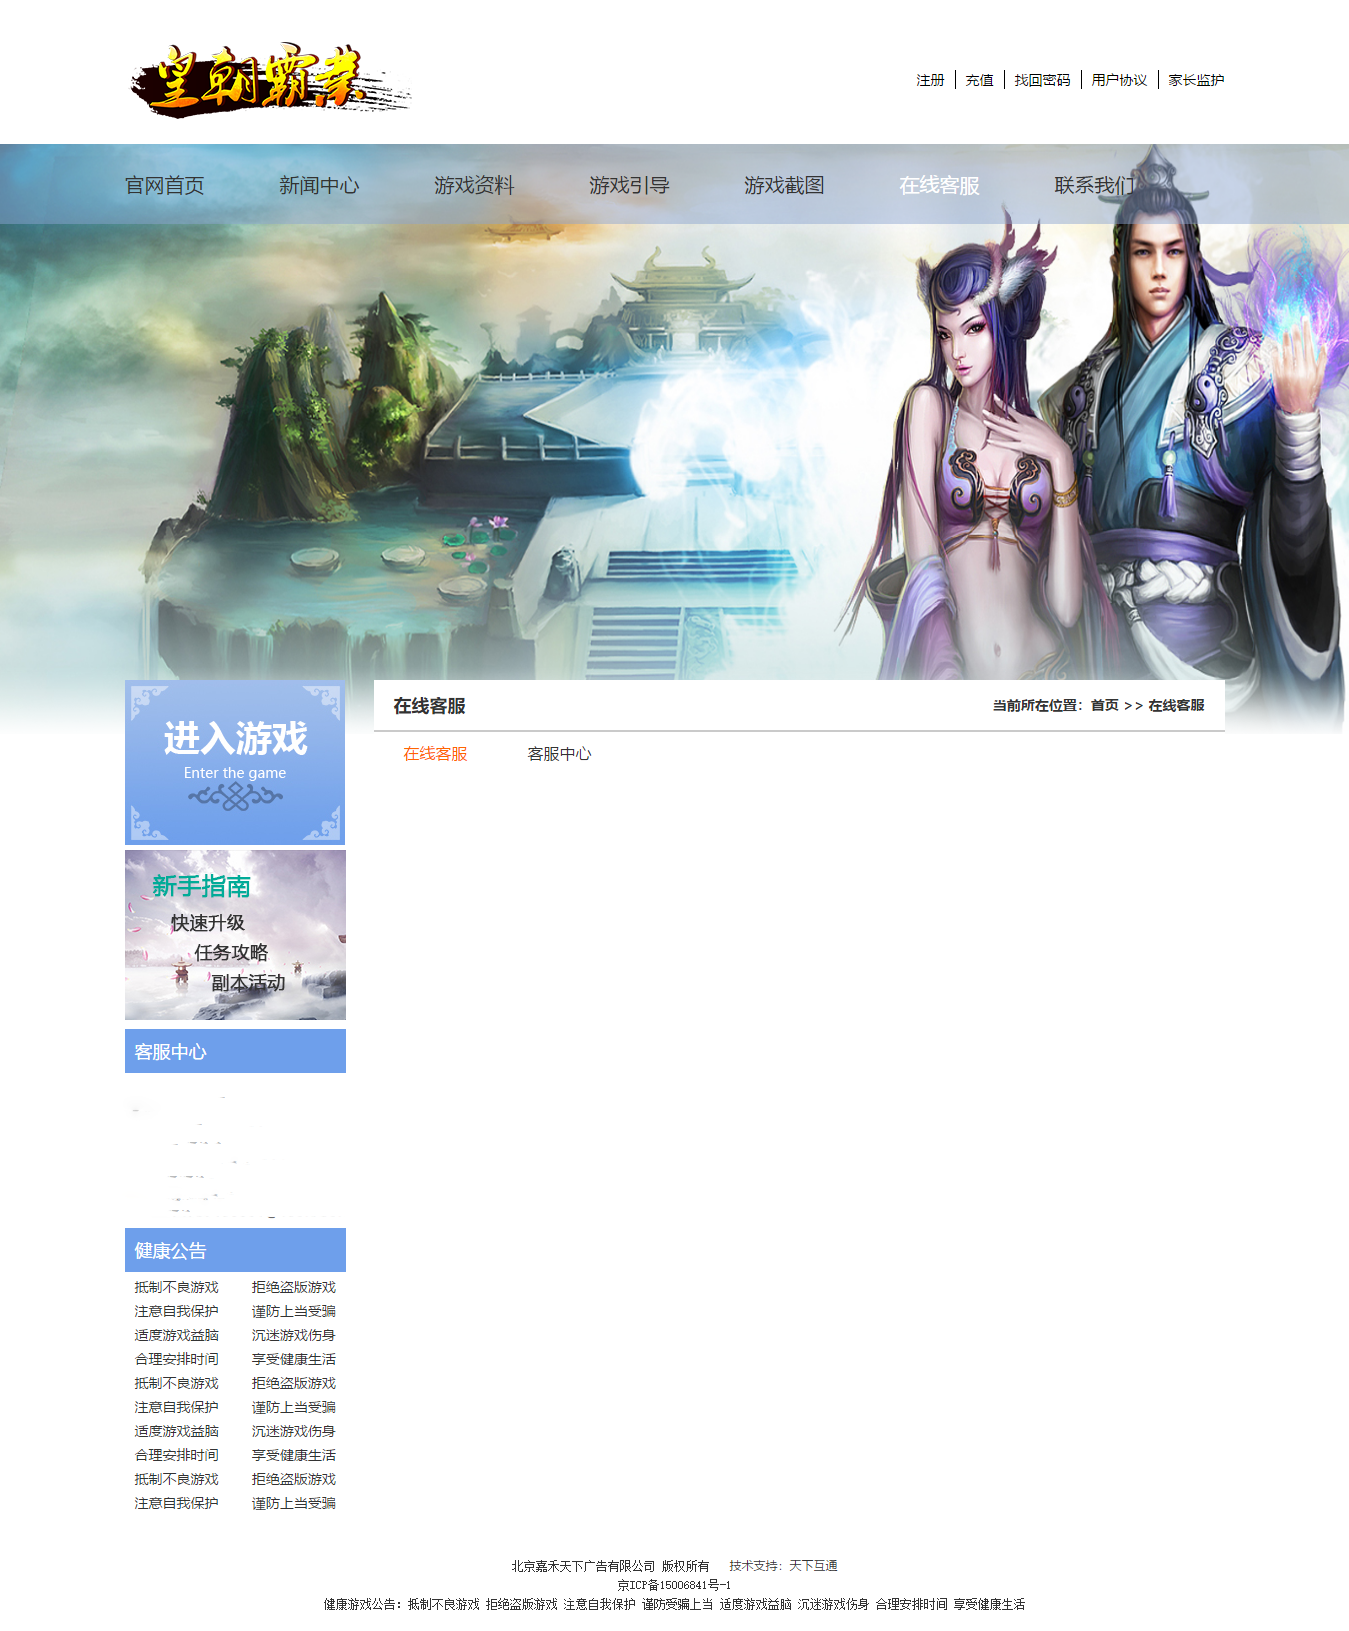 皇朝霸业游戏网站建设在线客服